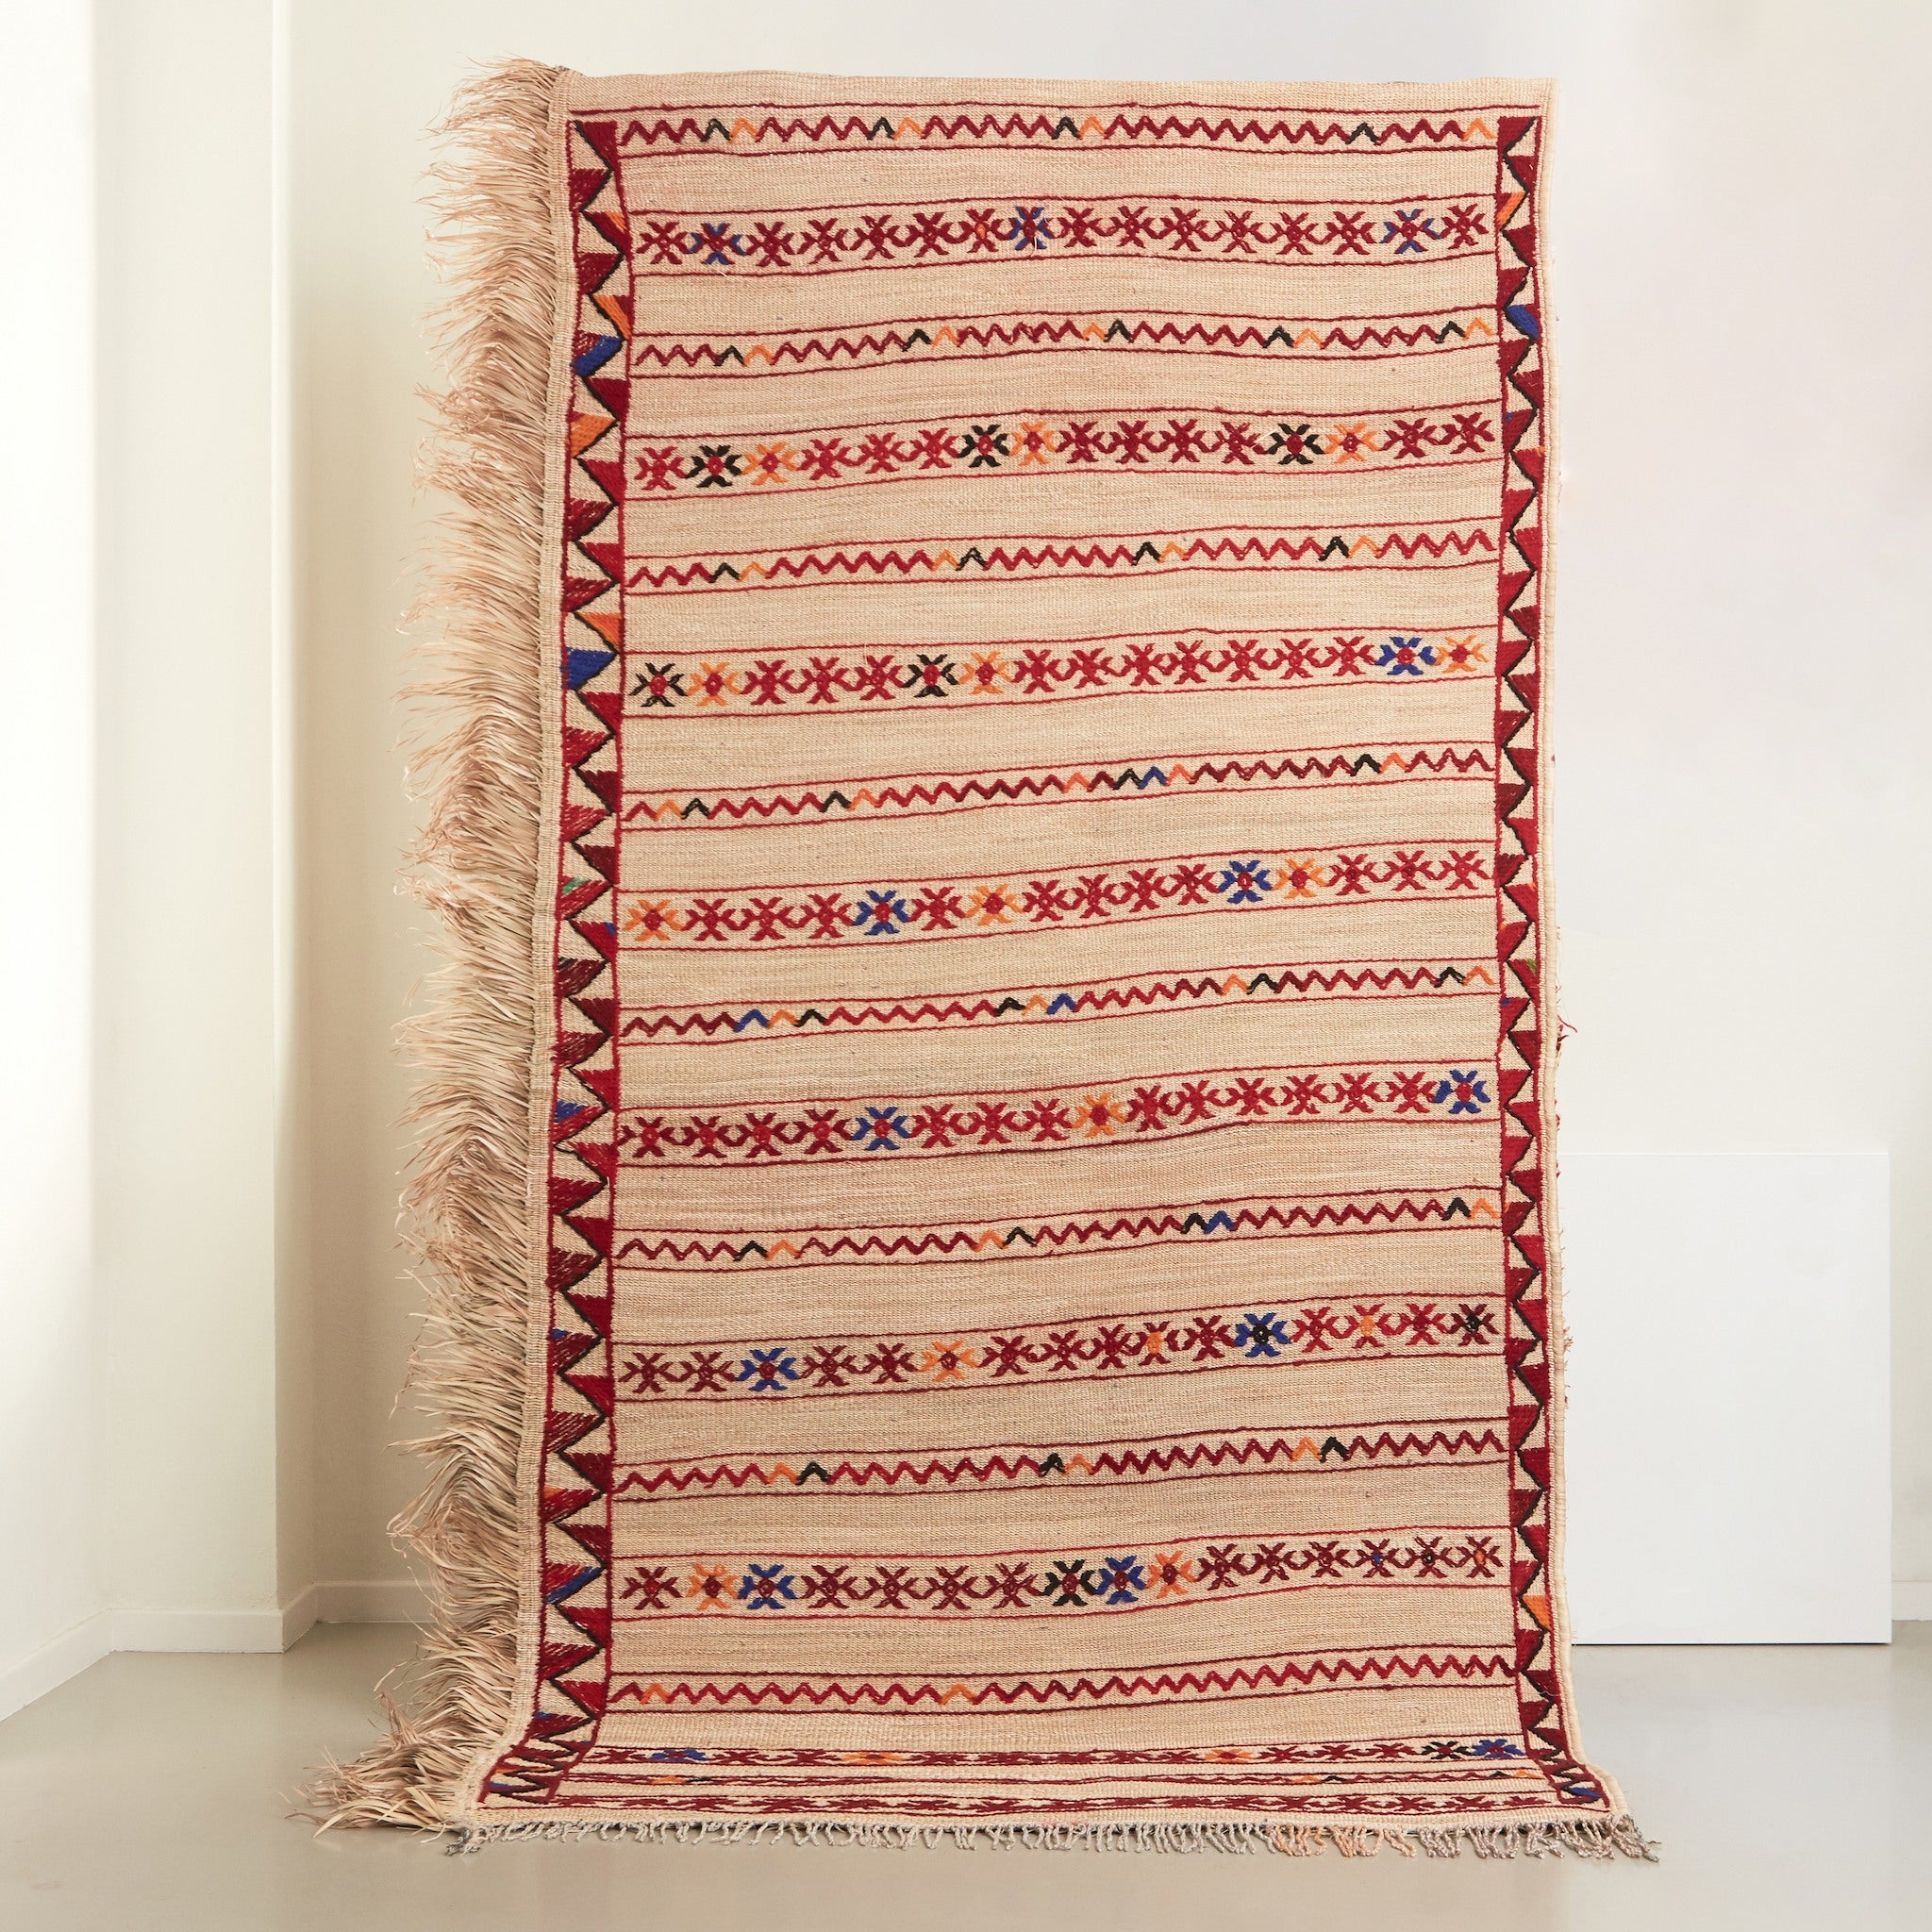 stuoia tappeto in paglia hassira grande in paglia di palma e ricami in lana in posizione verticale